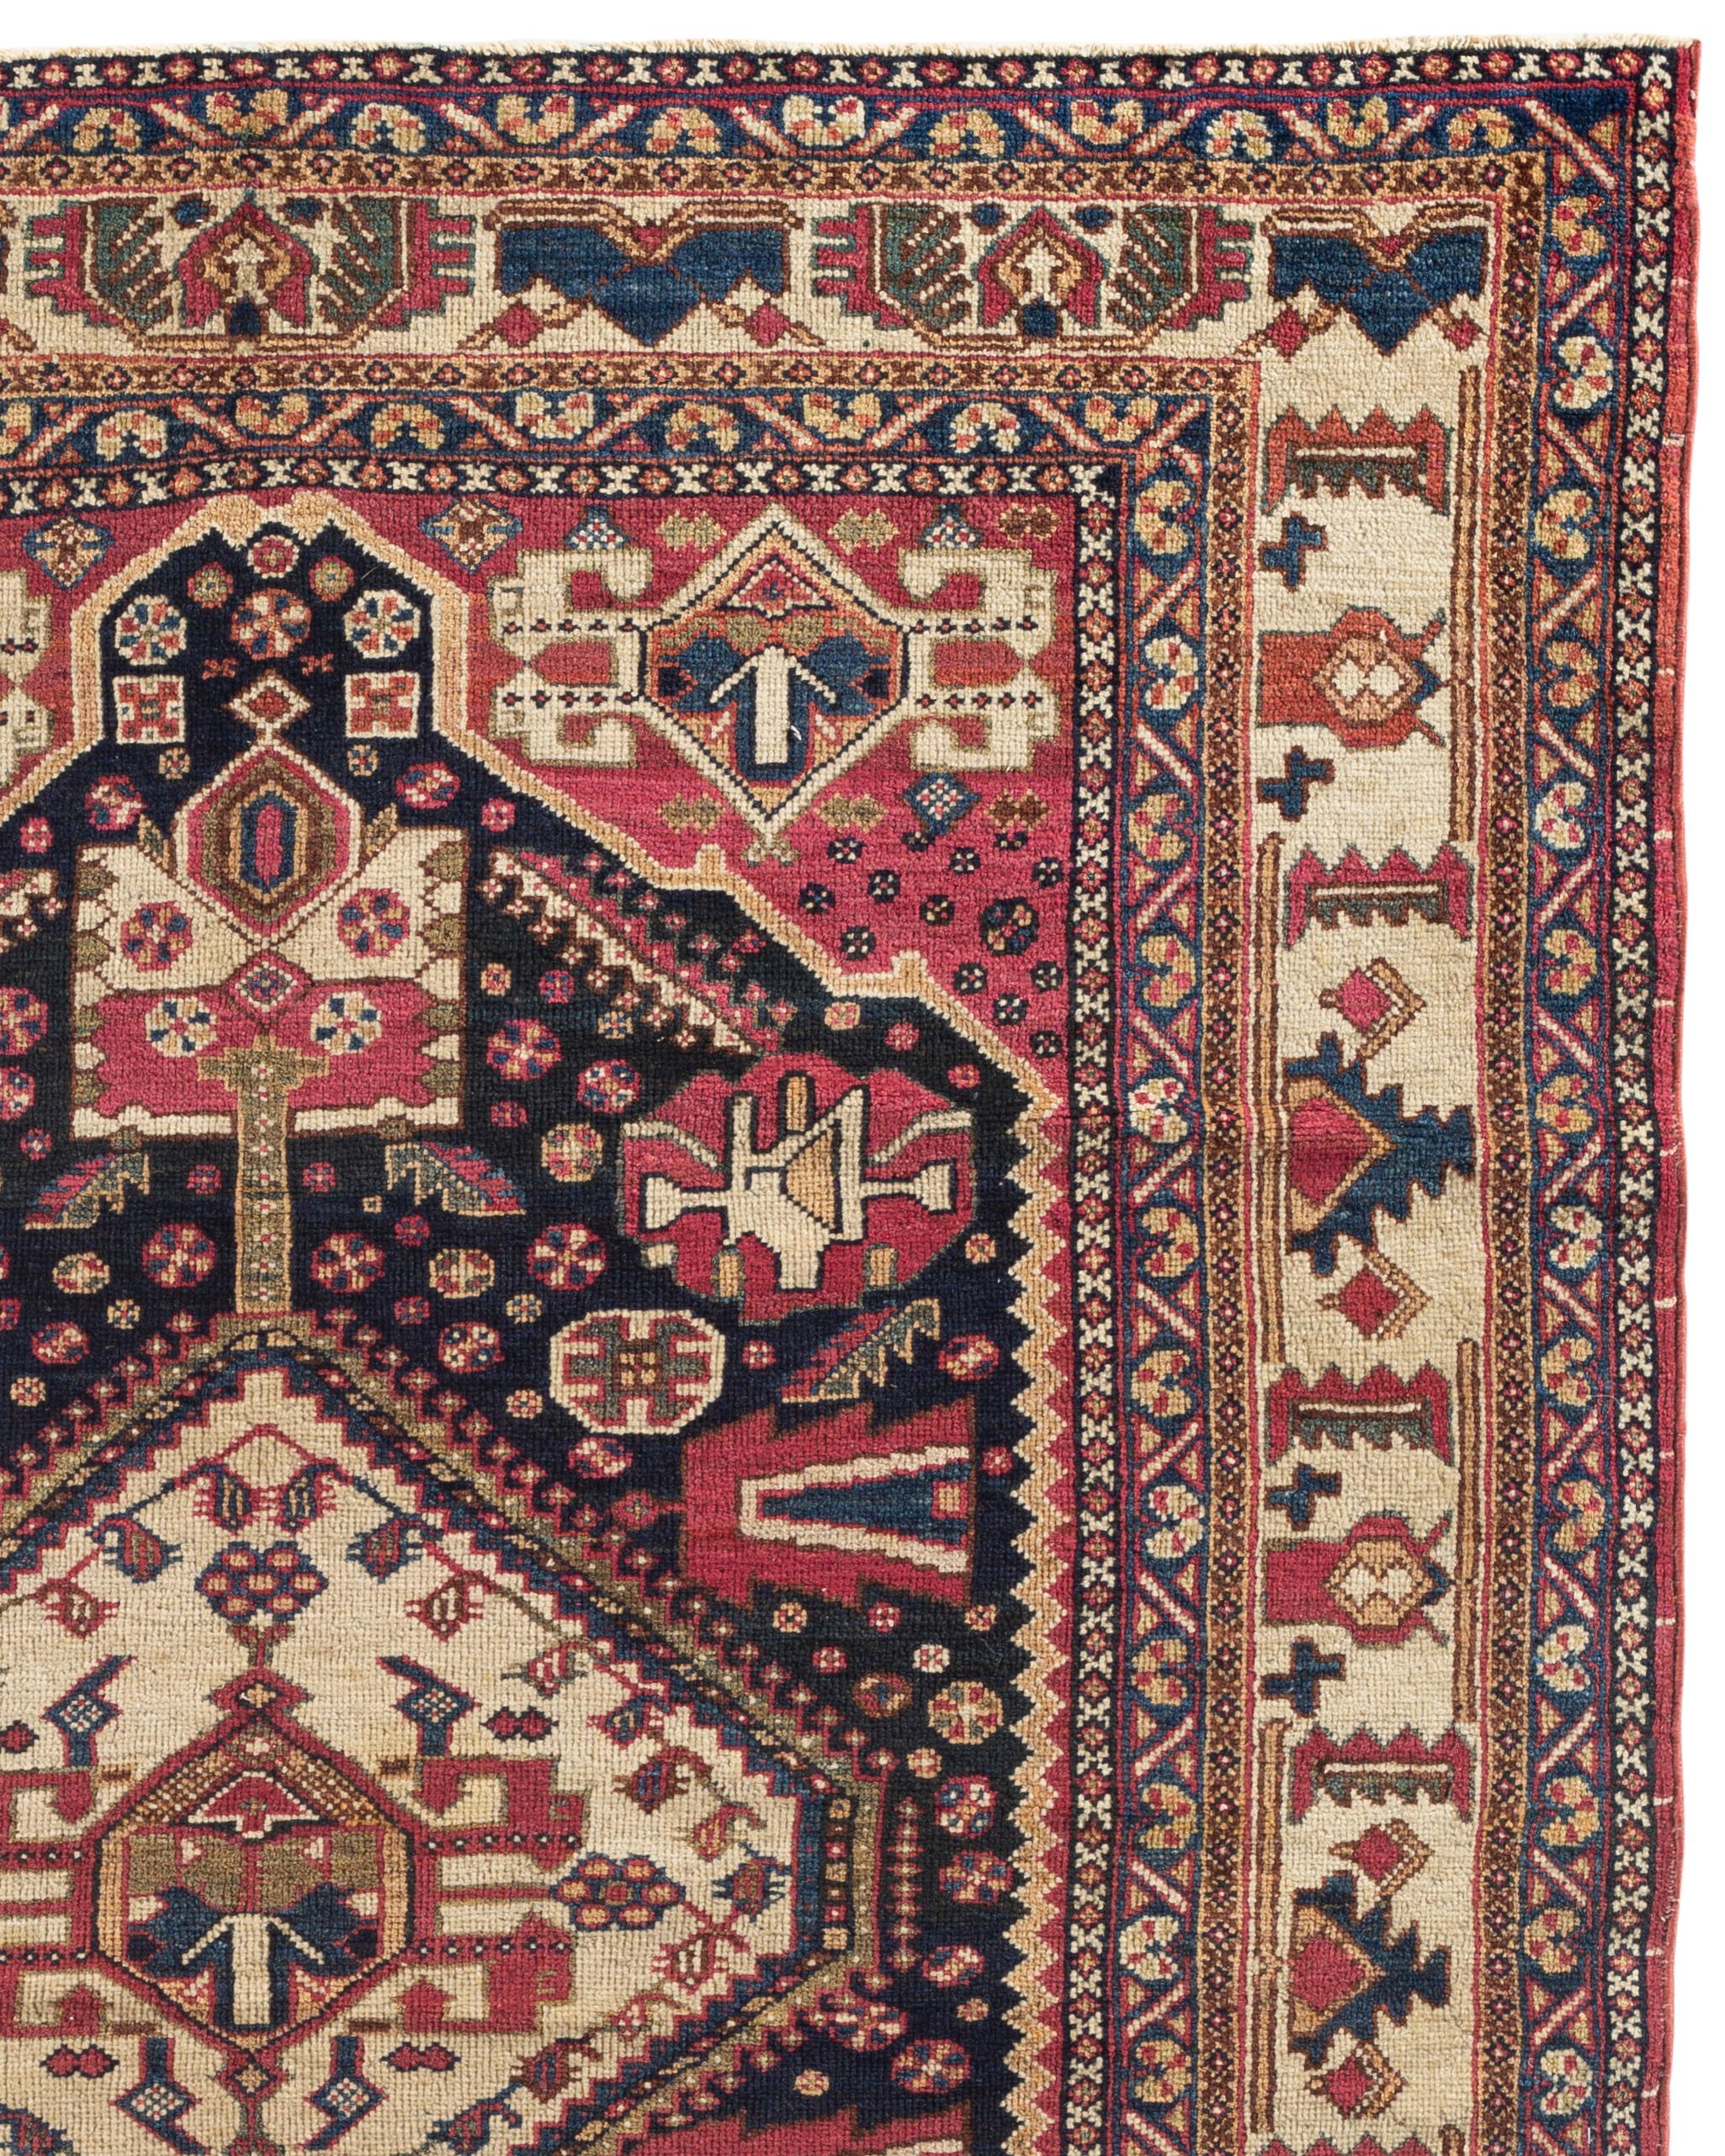 Antiker Gaschgai-Teppich, um 1880. Die Gaschgai sind eine Stammeskonföderation im Iran. Sie haben unterschiedliche ethnische Hintergründe, darunter Turkomanen, Luren und Kurden. Ihre Teppiche haben oft geometrische Muster und florale Motive. Die